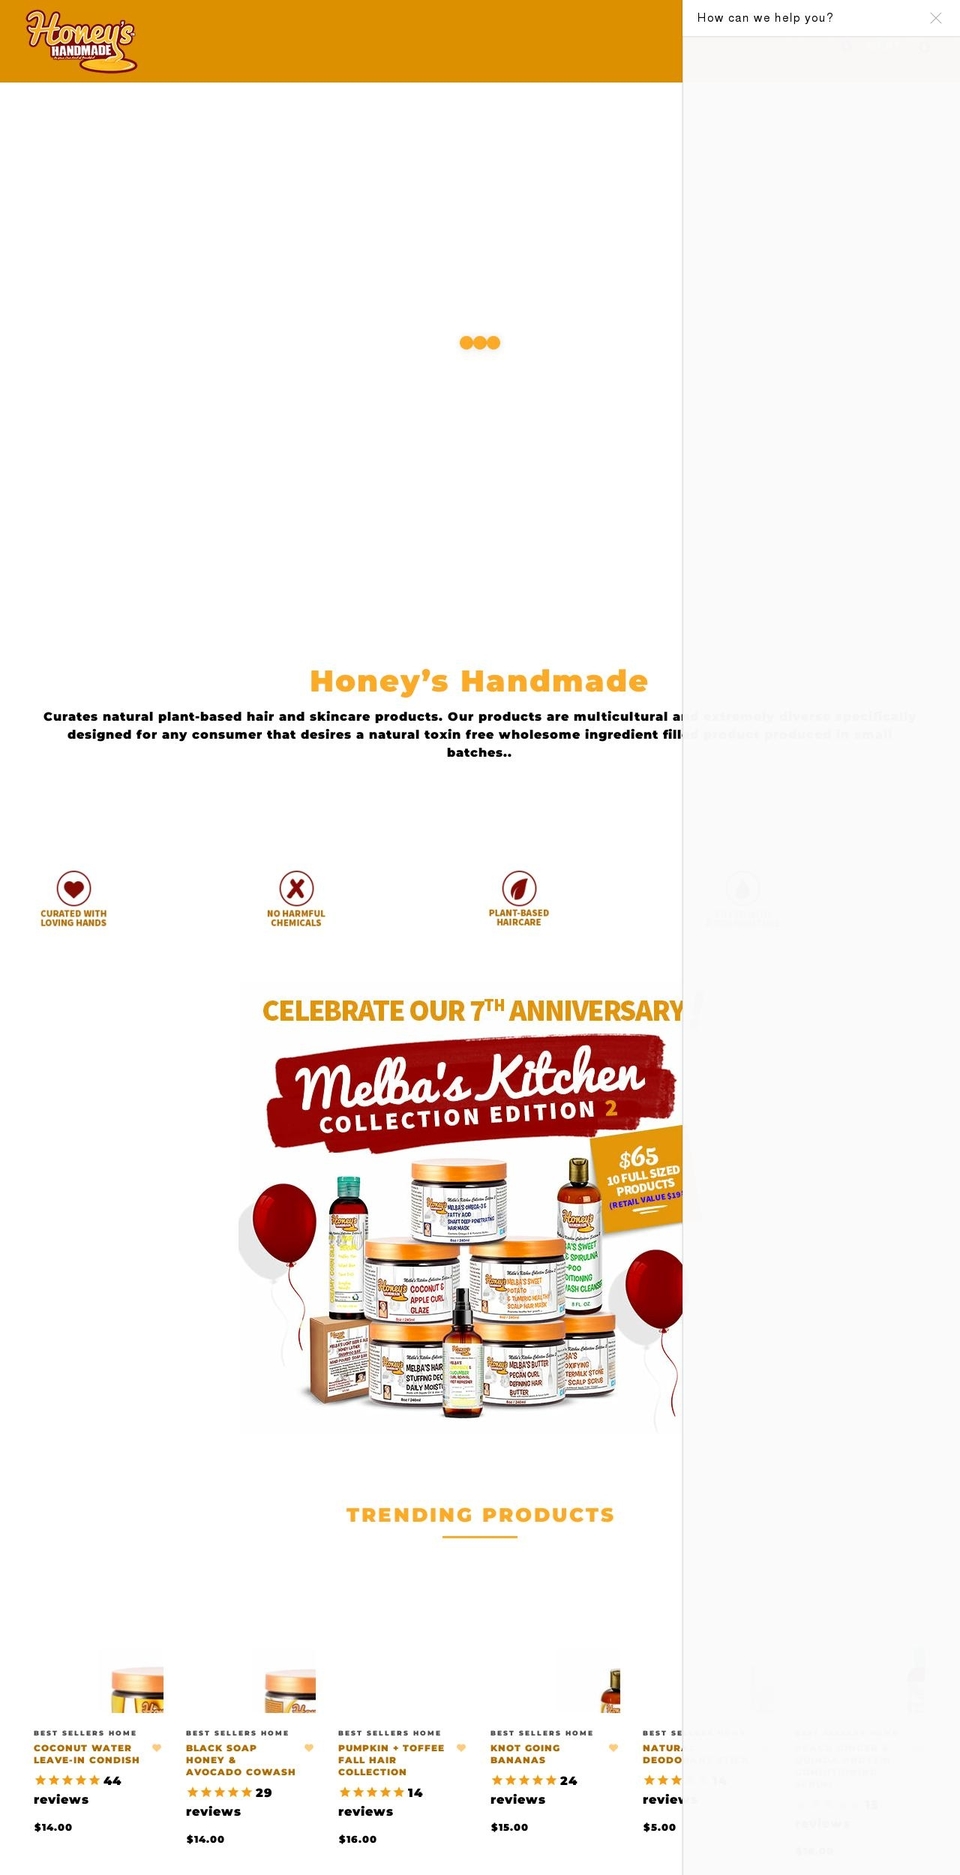 Handmade Shopify theme site example honeyshandmade.com